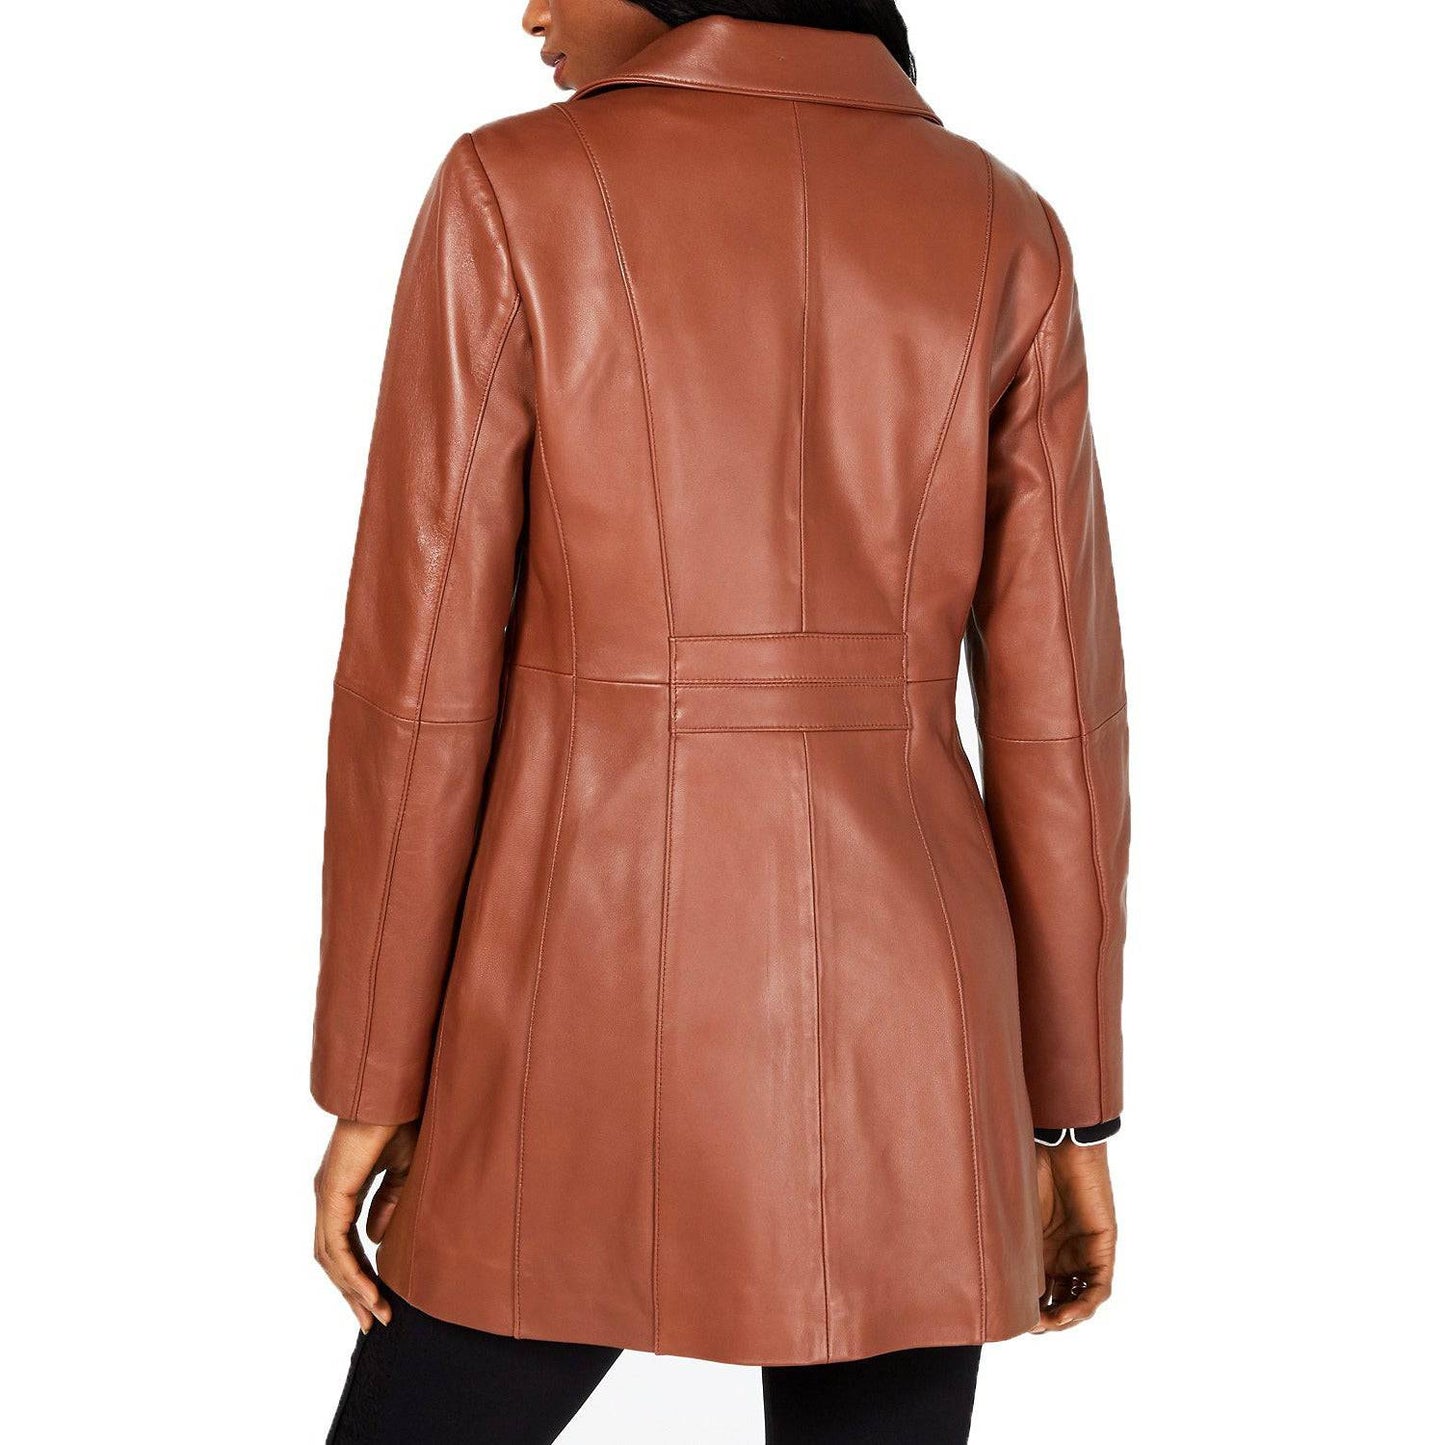 Anne Klein Women's Stand-Collar Leather Walker Coat